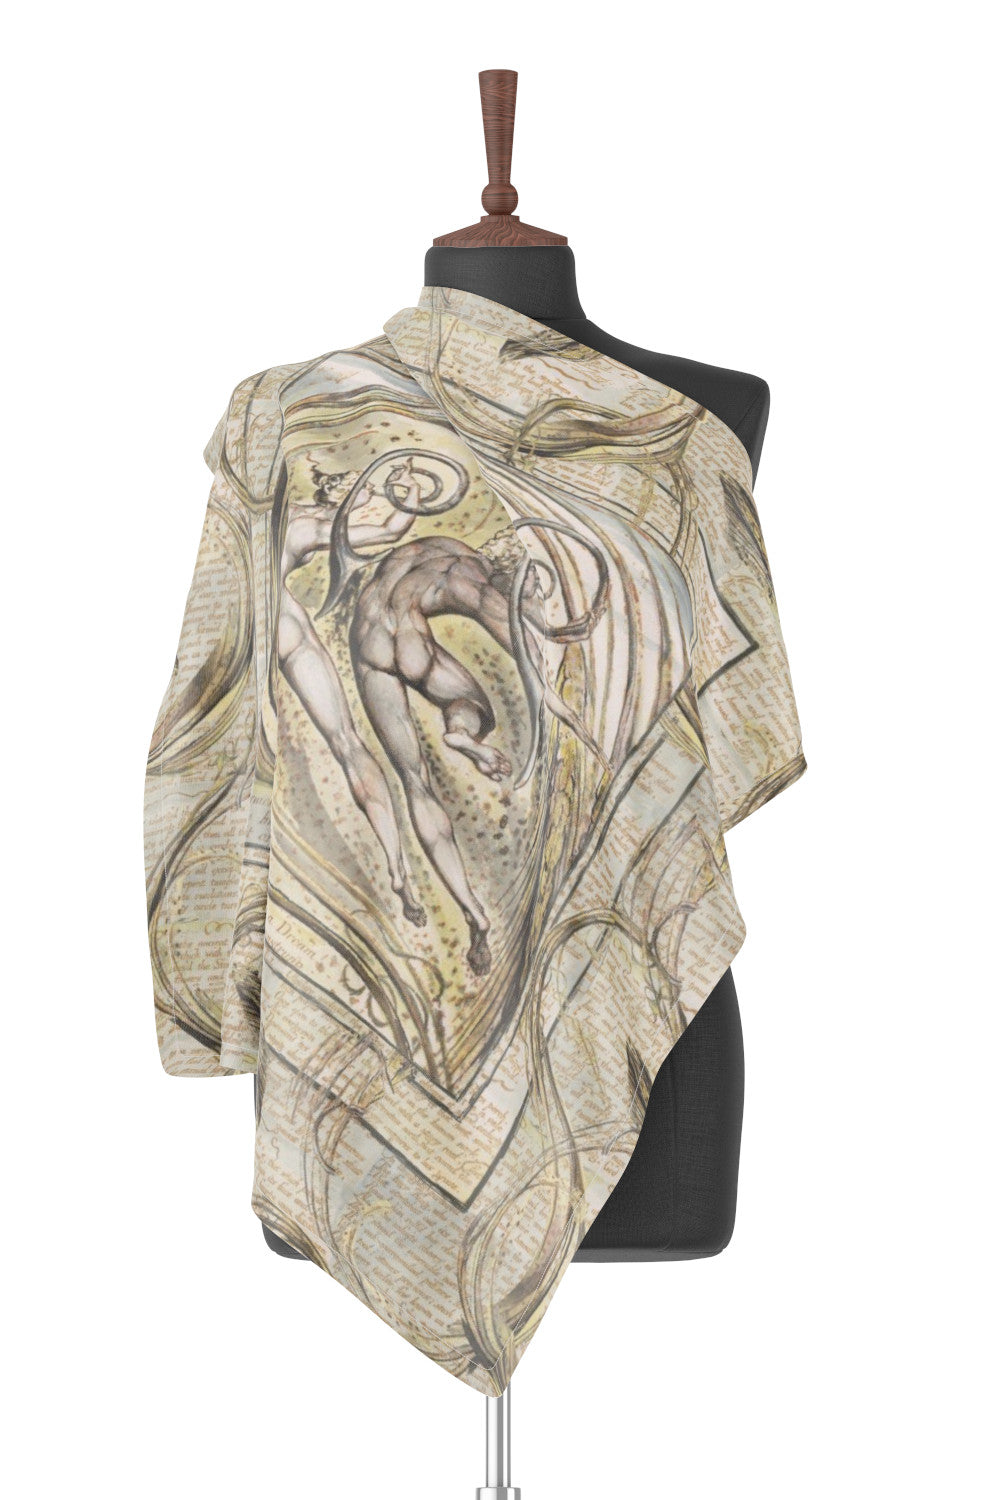 Enitharmon Slept - Silk square scarf